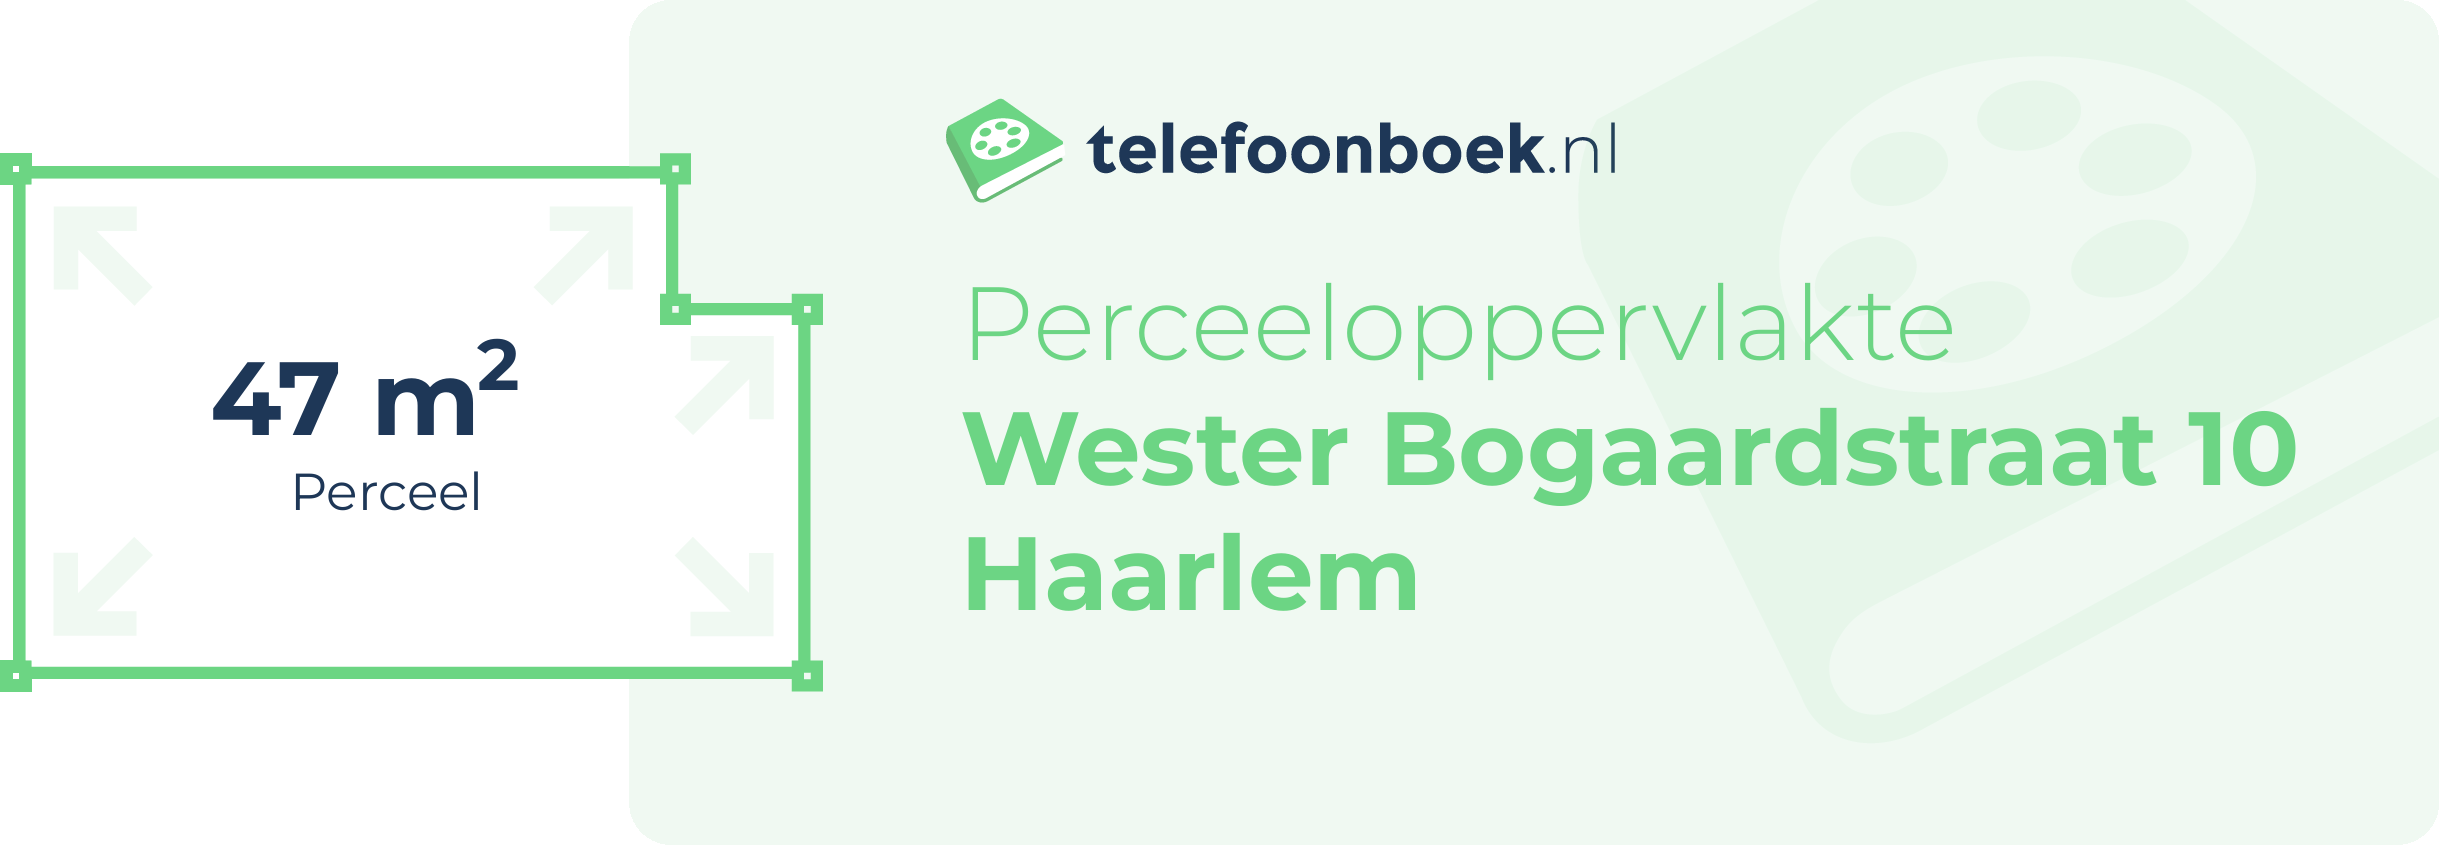 Perceeloppervlakte Wester Bogaardstraat 10 Haarlem